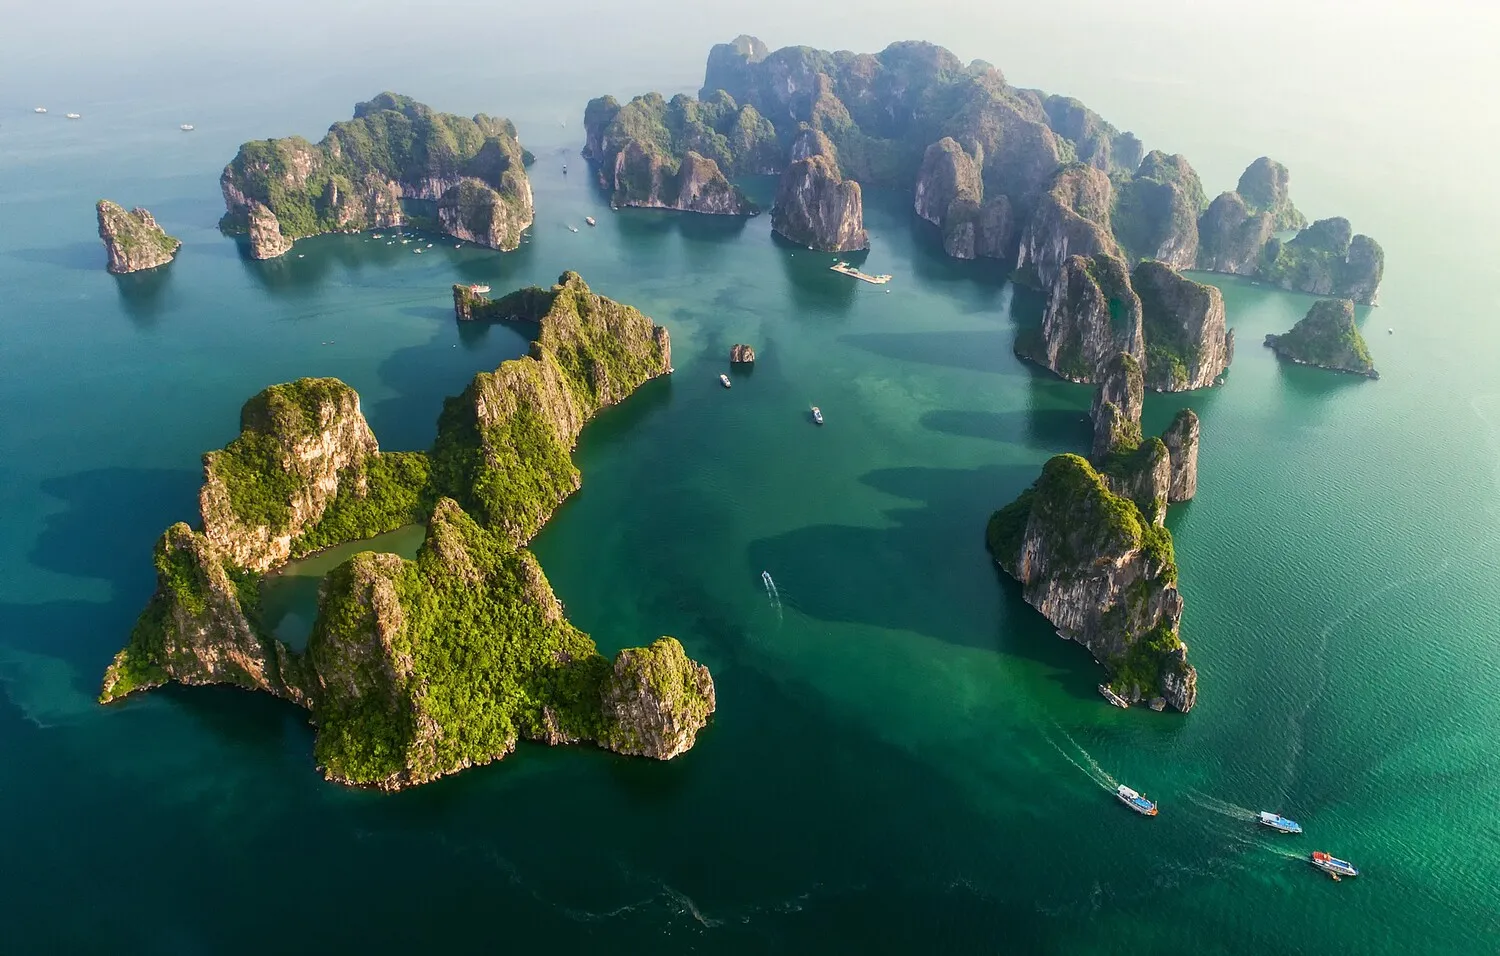 Du lịch Hạ Long – Ngắm mùa thu trên vịnh đẹp nhất Việt Nam